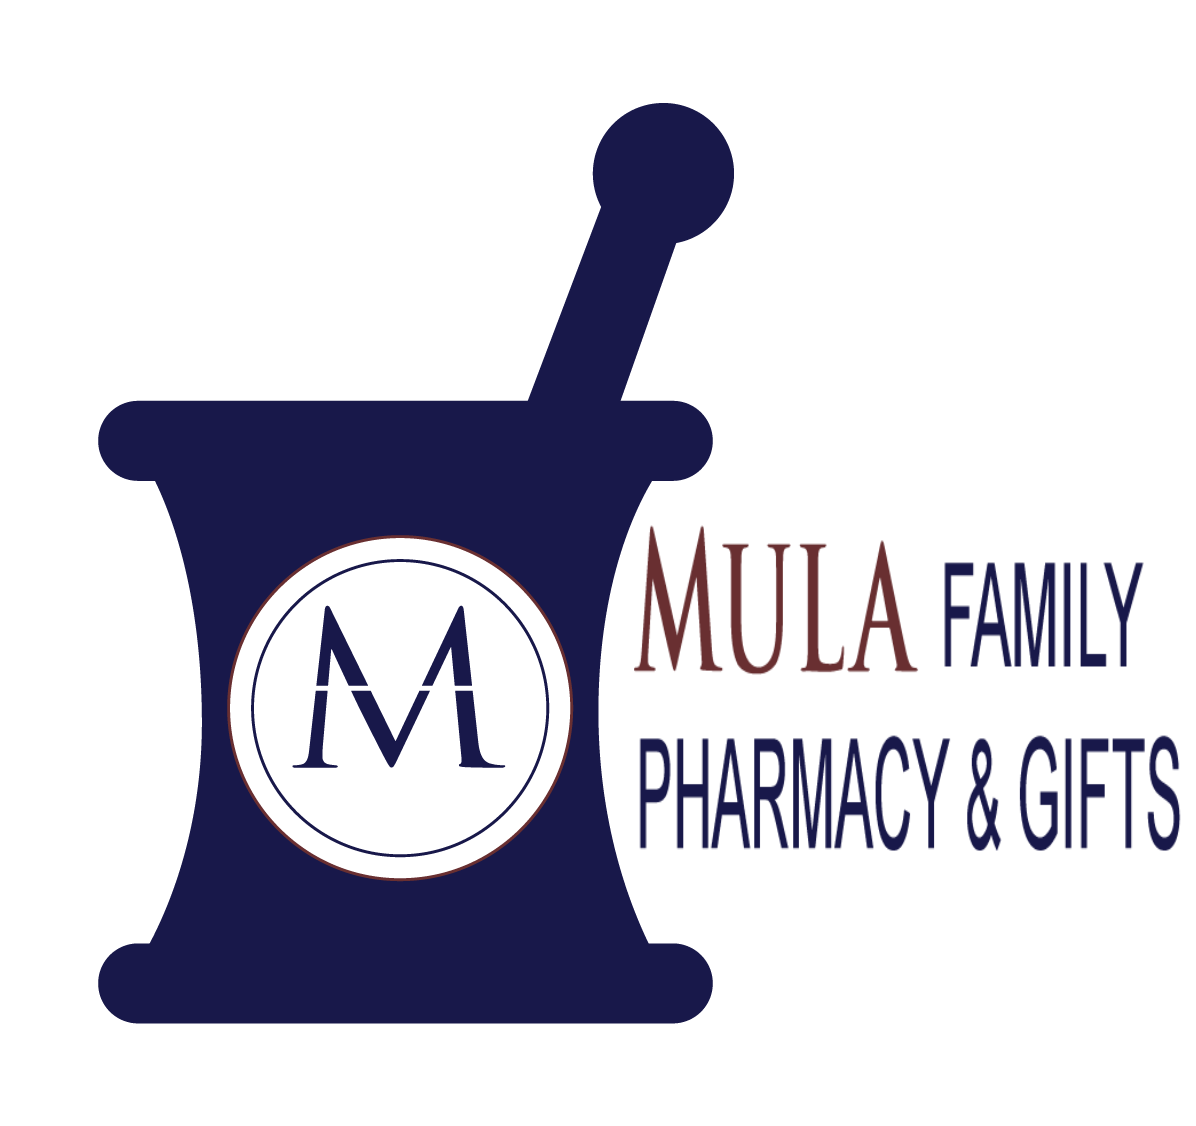 Mula Family Pharmacy & Gifts